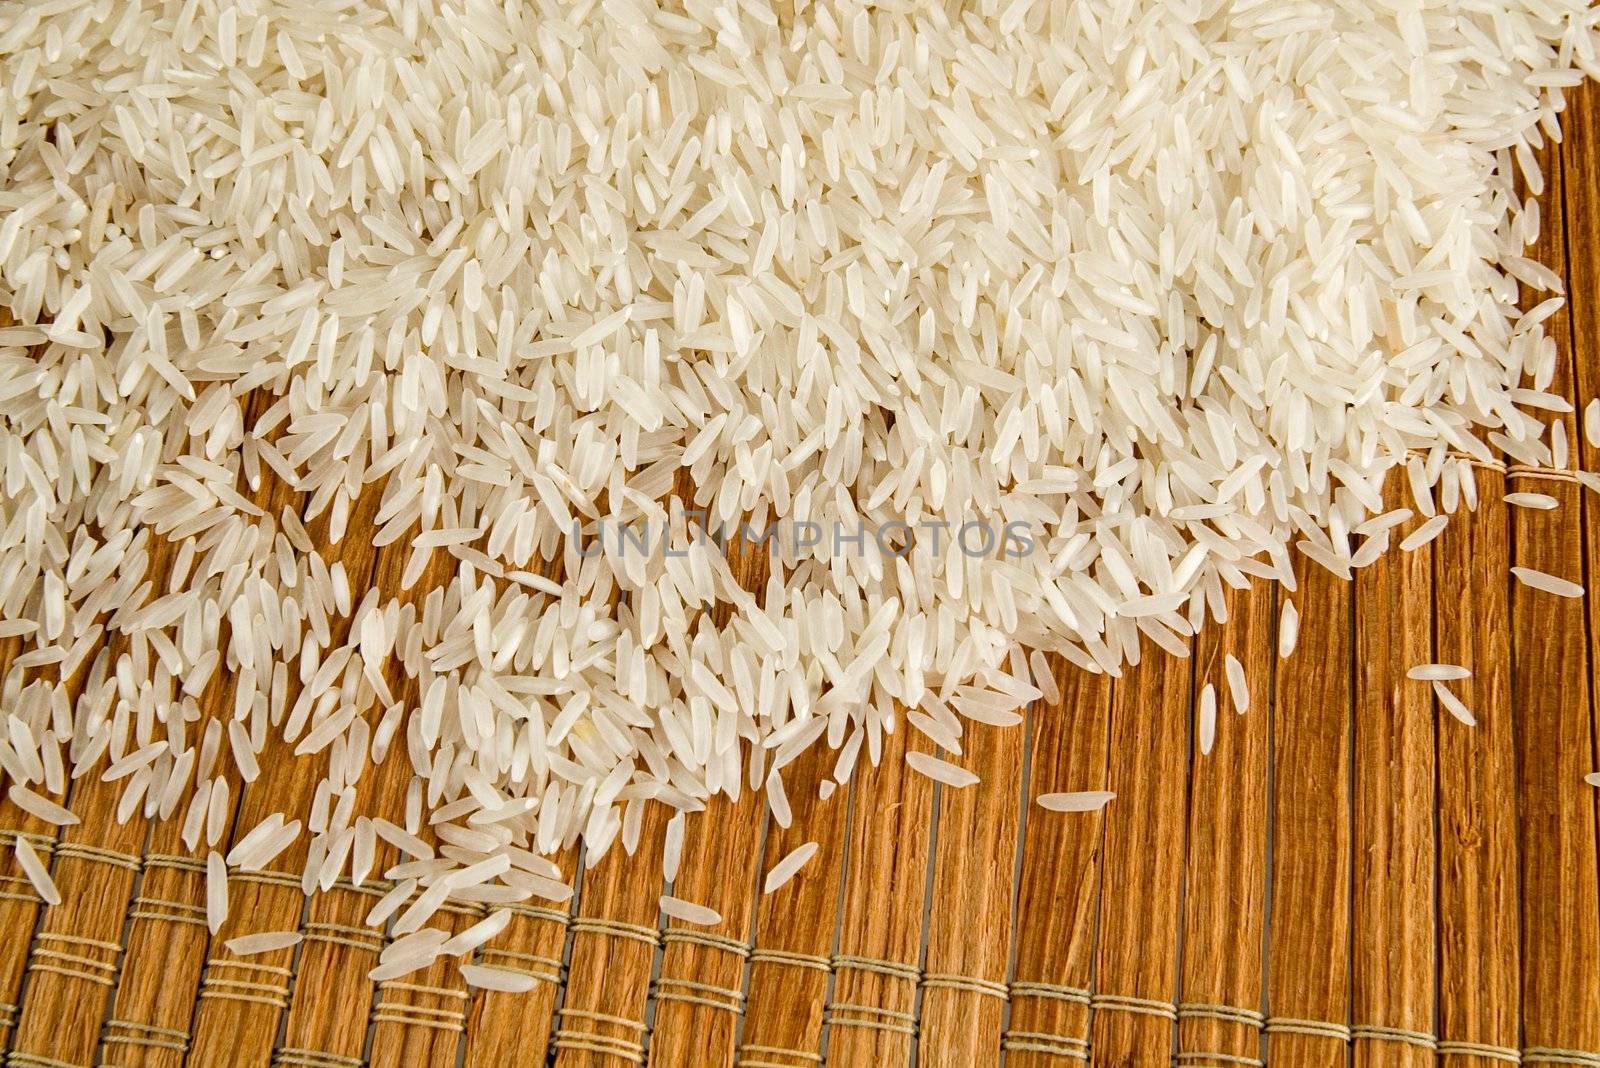 Rice by sibrikov